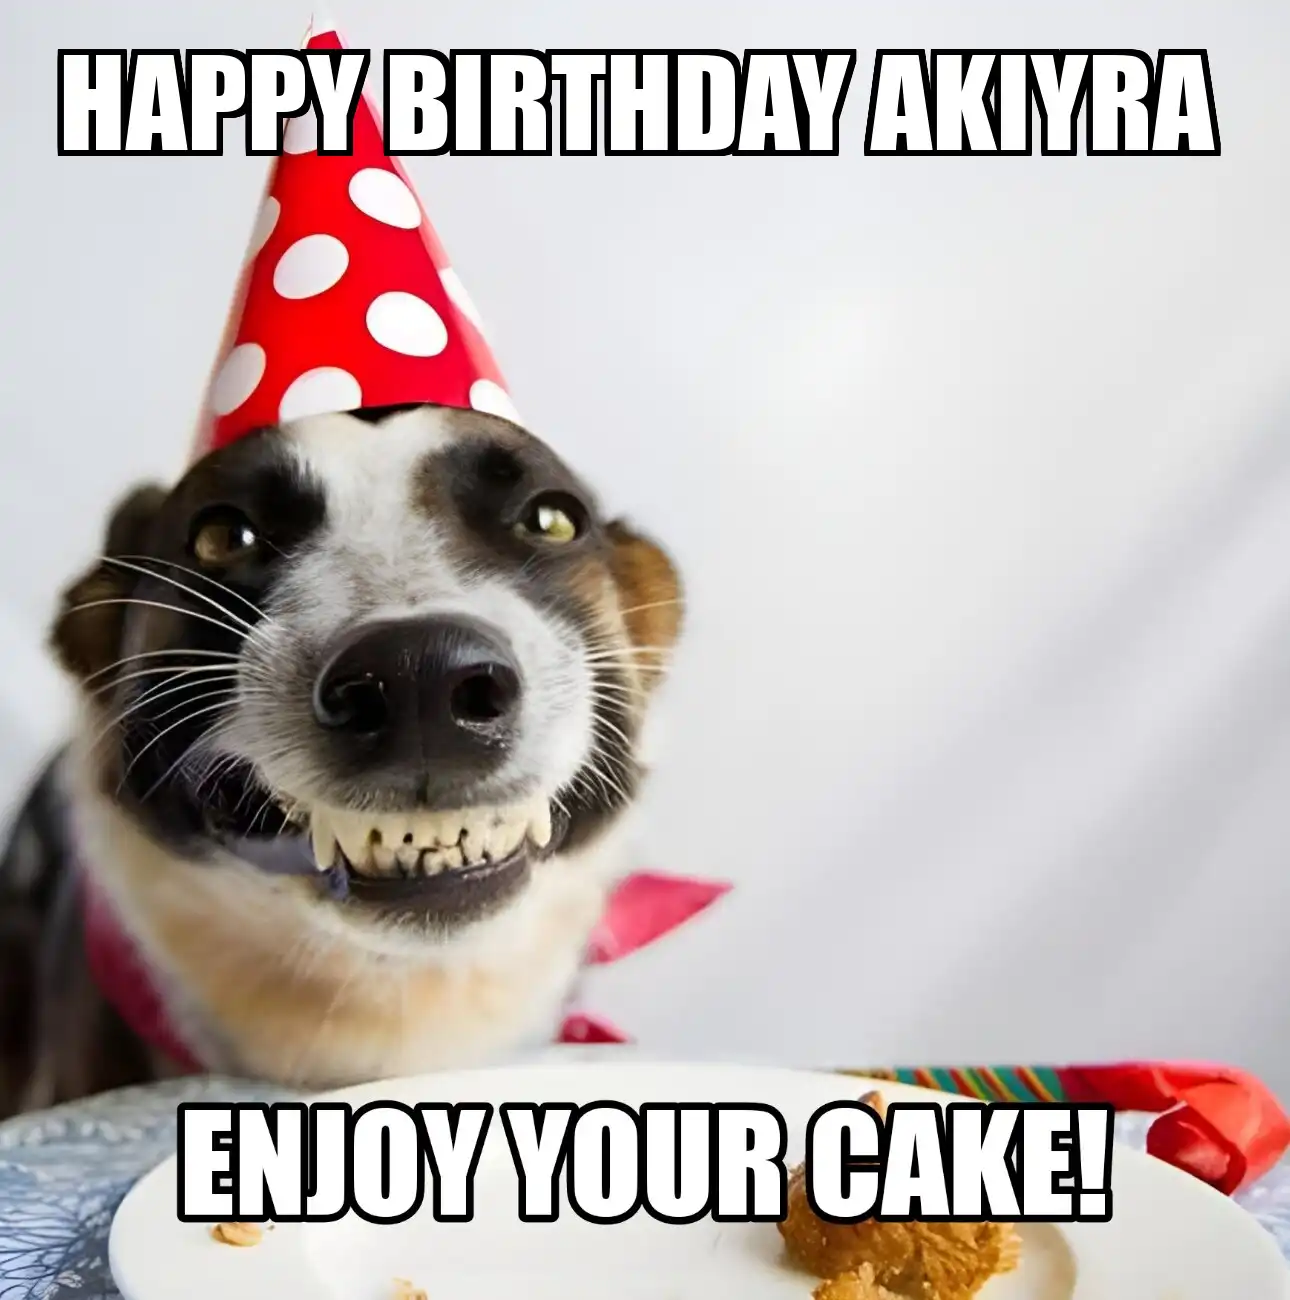 Happy Birthday Akiyra Enjoy Your Cake Dog Meme